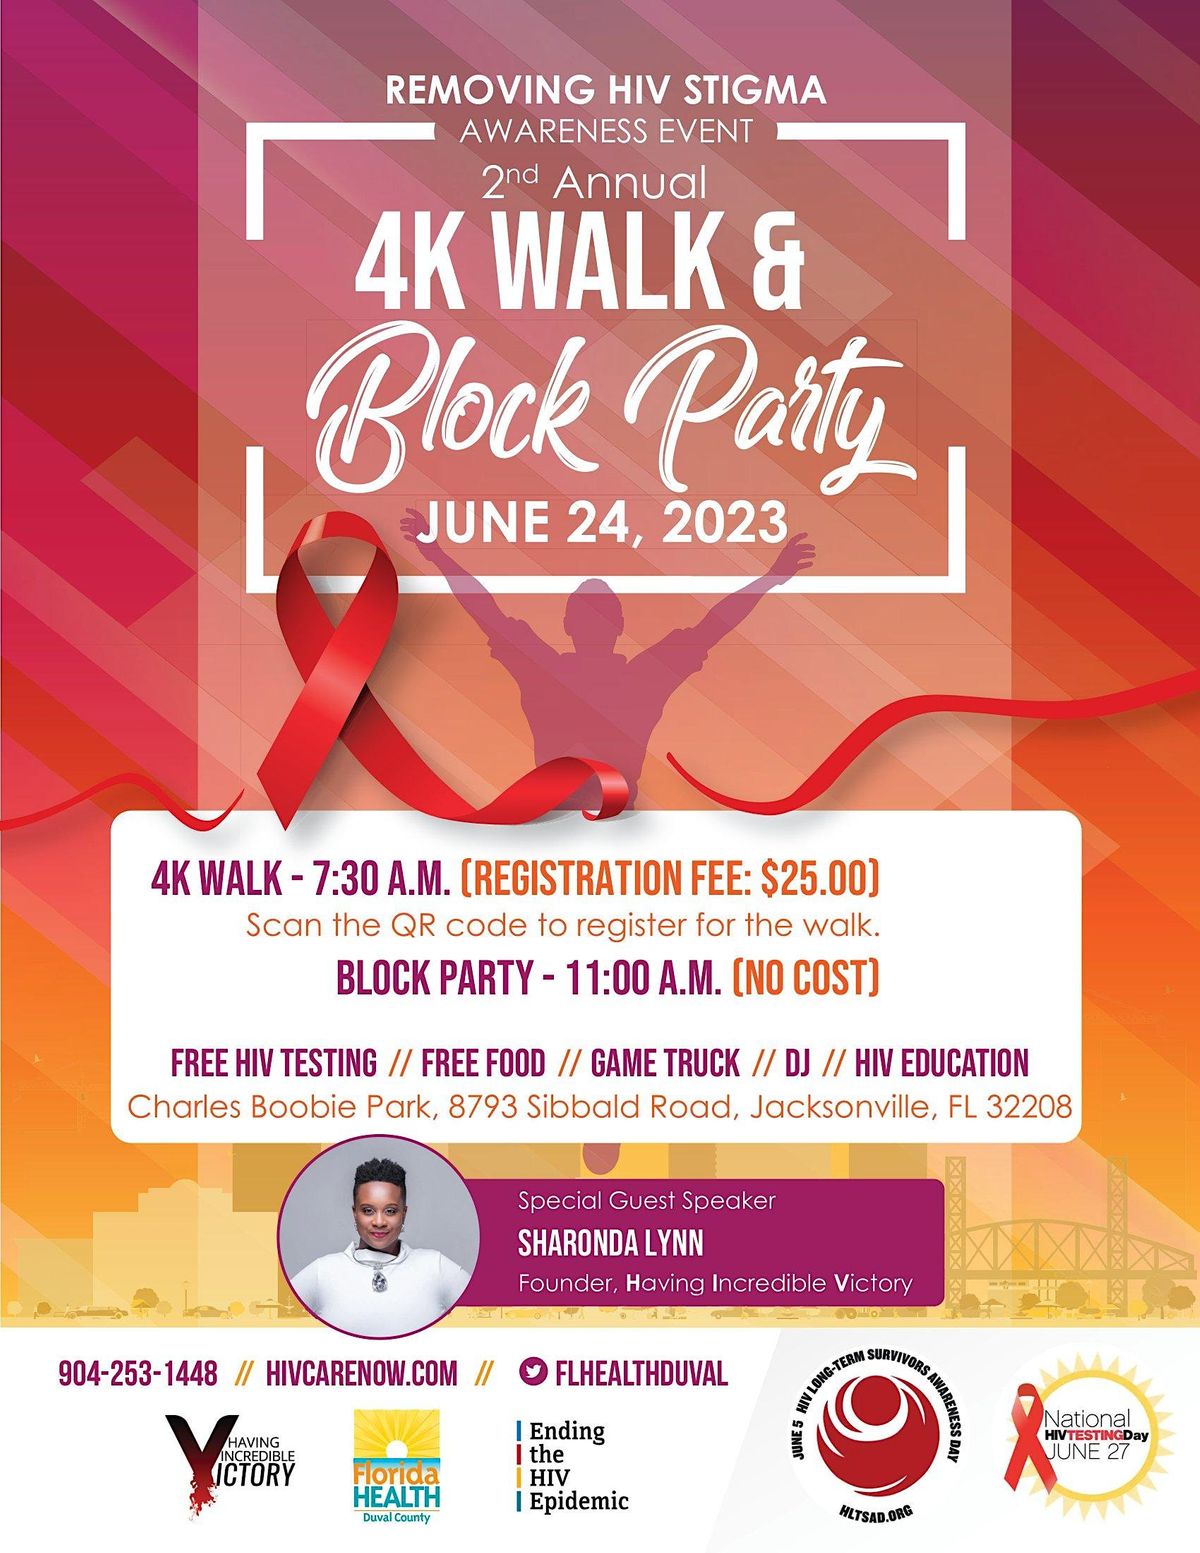 2nd Annual Removing HIV Stigma 4k walk\/healthcare block party